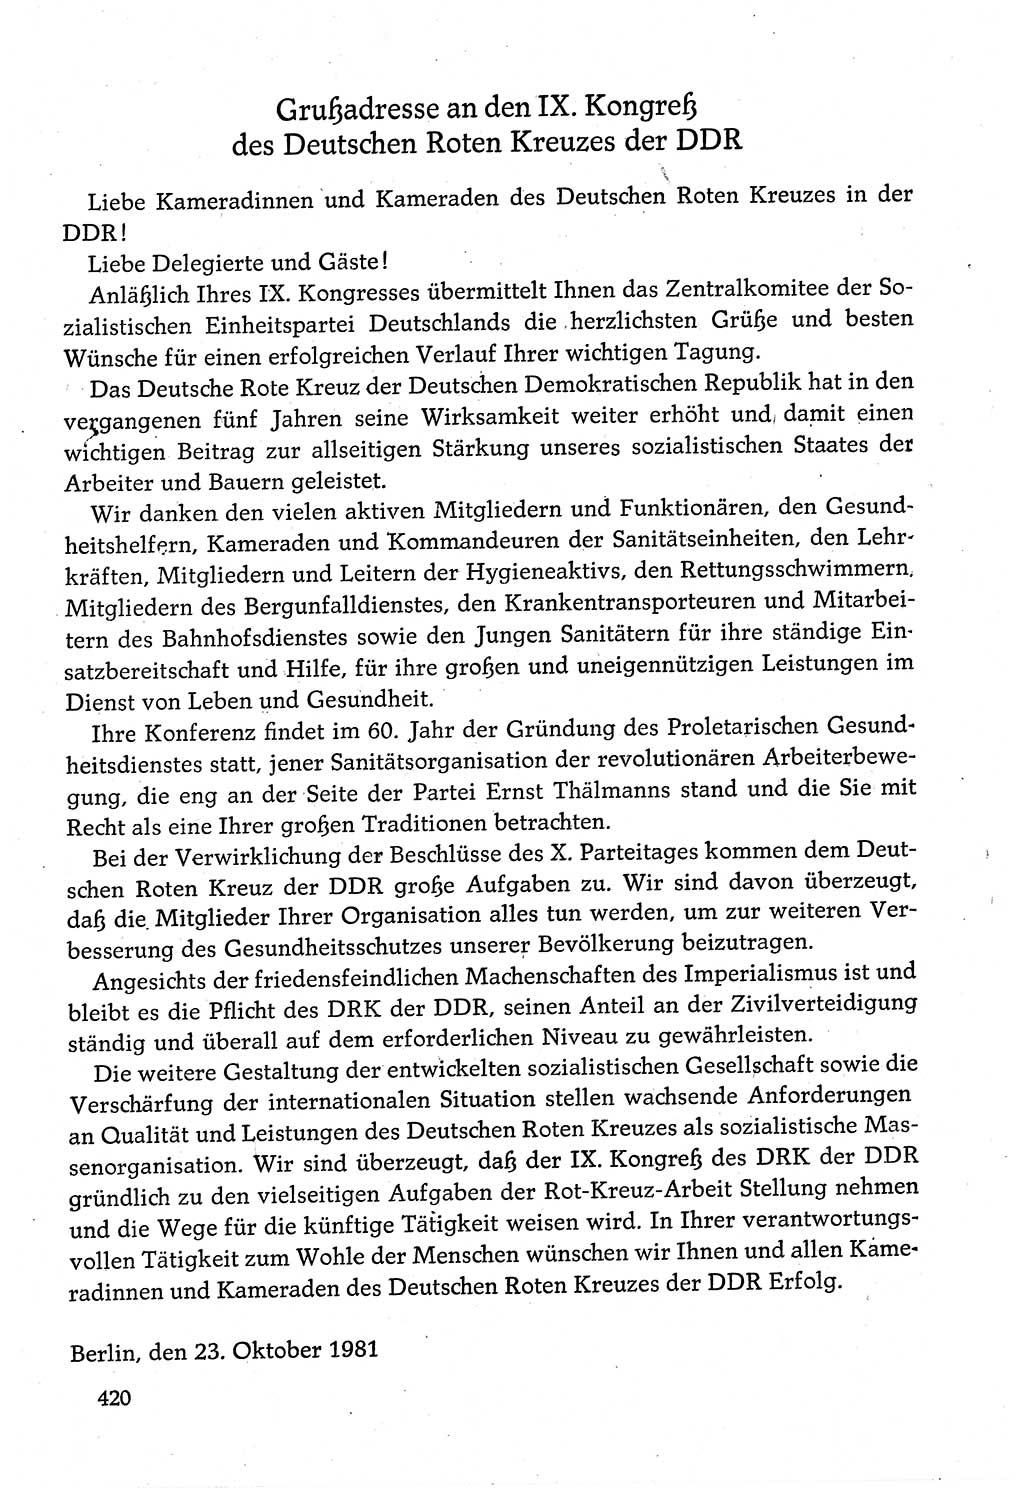 Dokumente der Sozialistischen Einheitspartei Deutschlands (SED) [Deutsche Demokratische Republik (DDR)] 1980-1981, Seite 420 (Dok. SED DDR 1980-1981, S. 420)